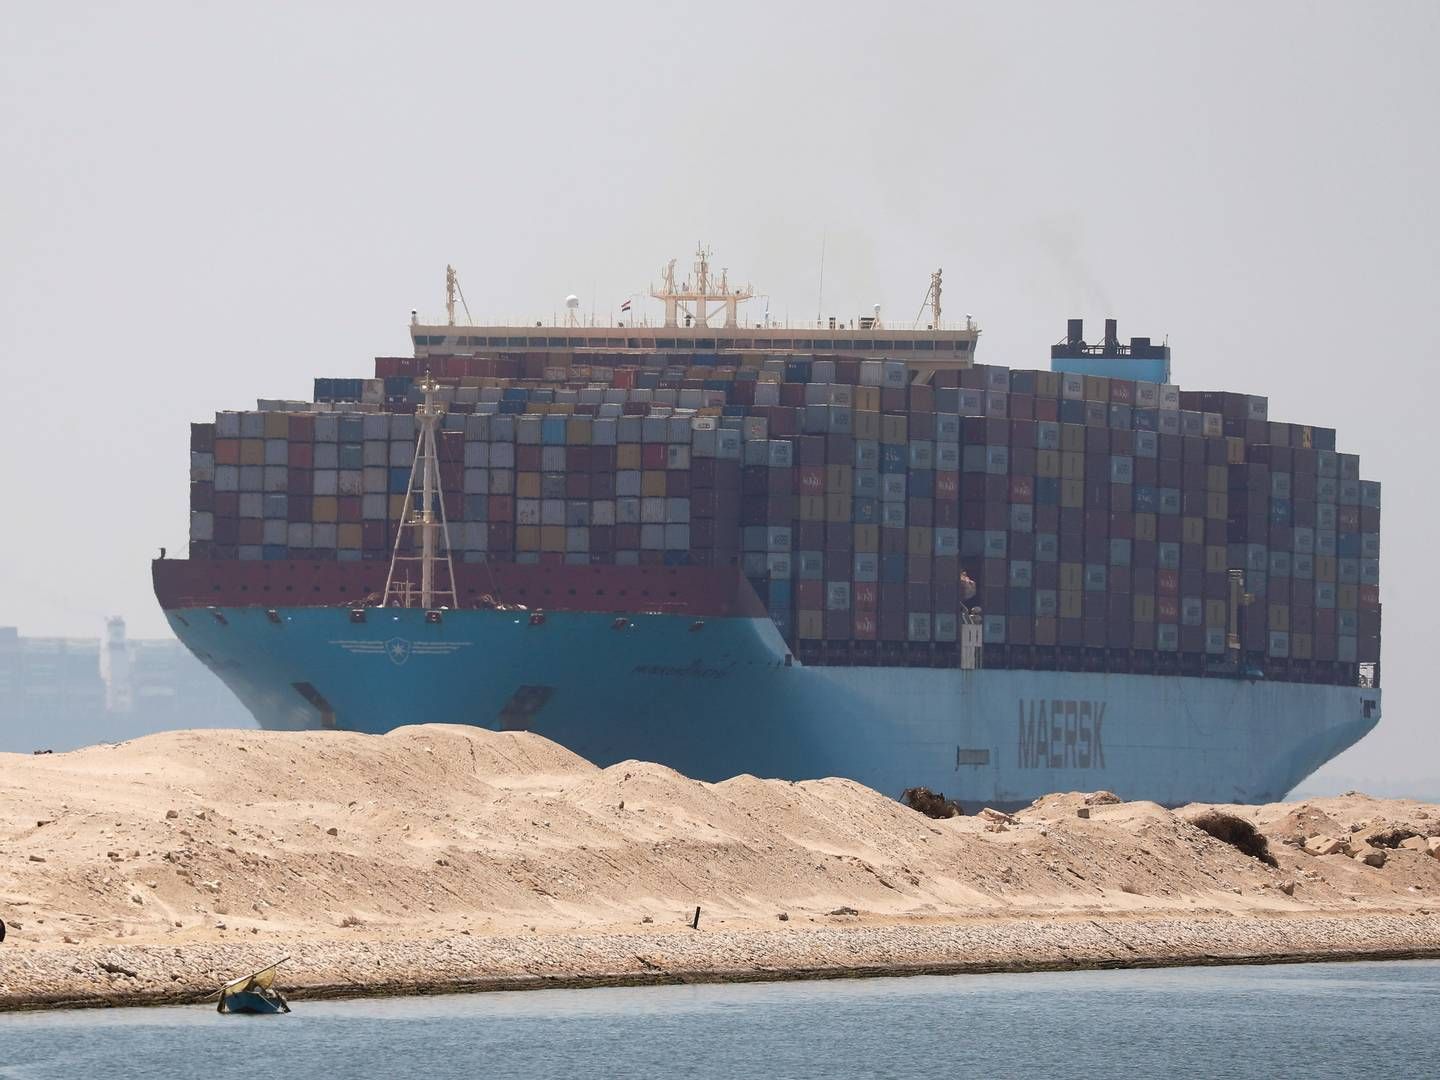 Verdens største rederi, MSC, som blev udsat for et angreb så sent som 26. december, holder sig fortsat væk fra området. | Foto: Amr Abdallah Dalsh/Reuters/Ritzau Scanpix